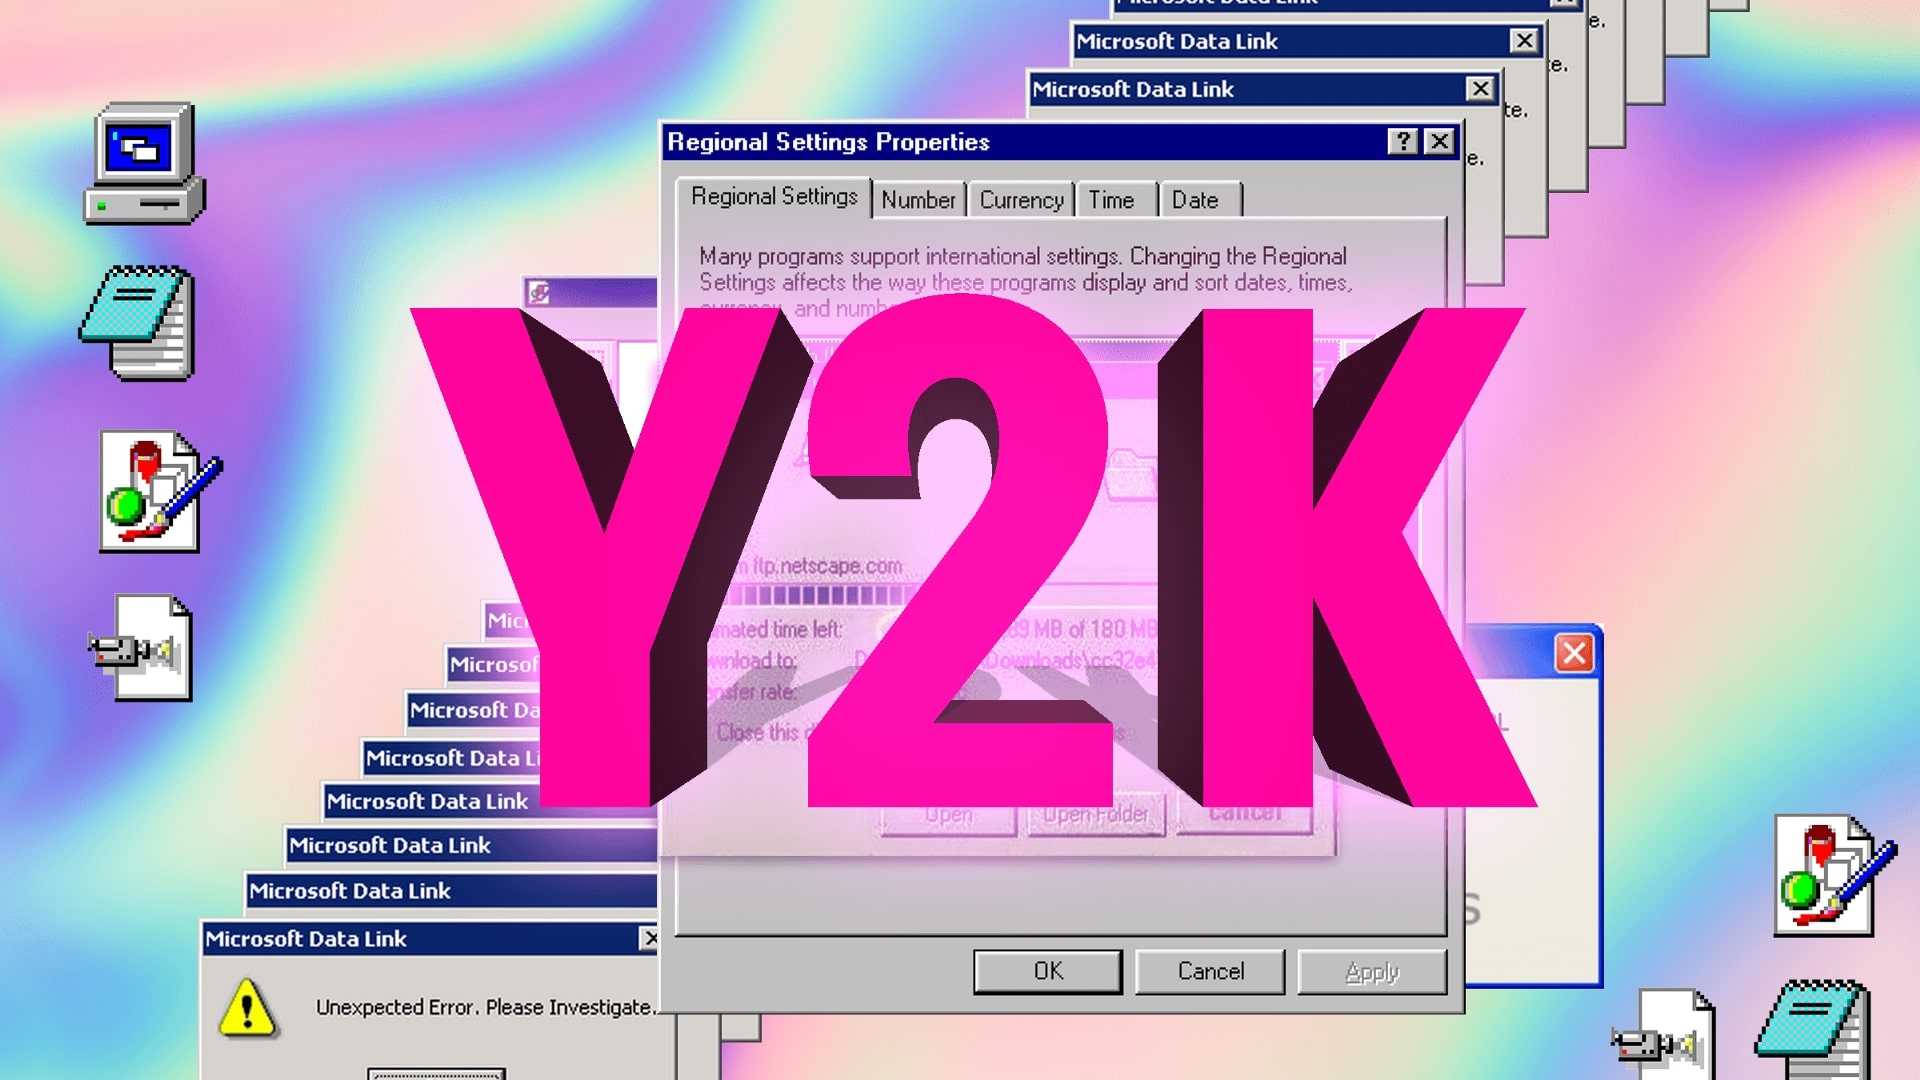 Y2K Wallpapers: Hình nền Y2K đã trở lại trong thời đại này! Những hình ảnh tương lai huyền diệu và vài sắc màu neon sẽ làm bừng sáng máy tính của bạn. Nhấn vào để khám phá danh sách những tác phẩm nghệ thuật đáng yêu nhất bạn từng thấy! 